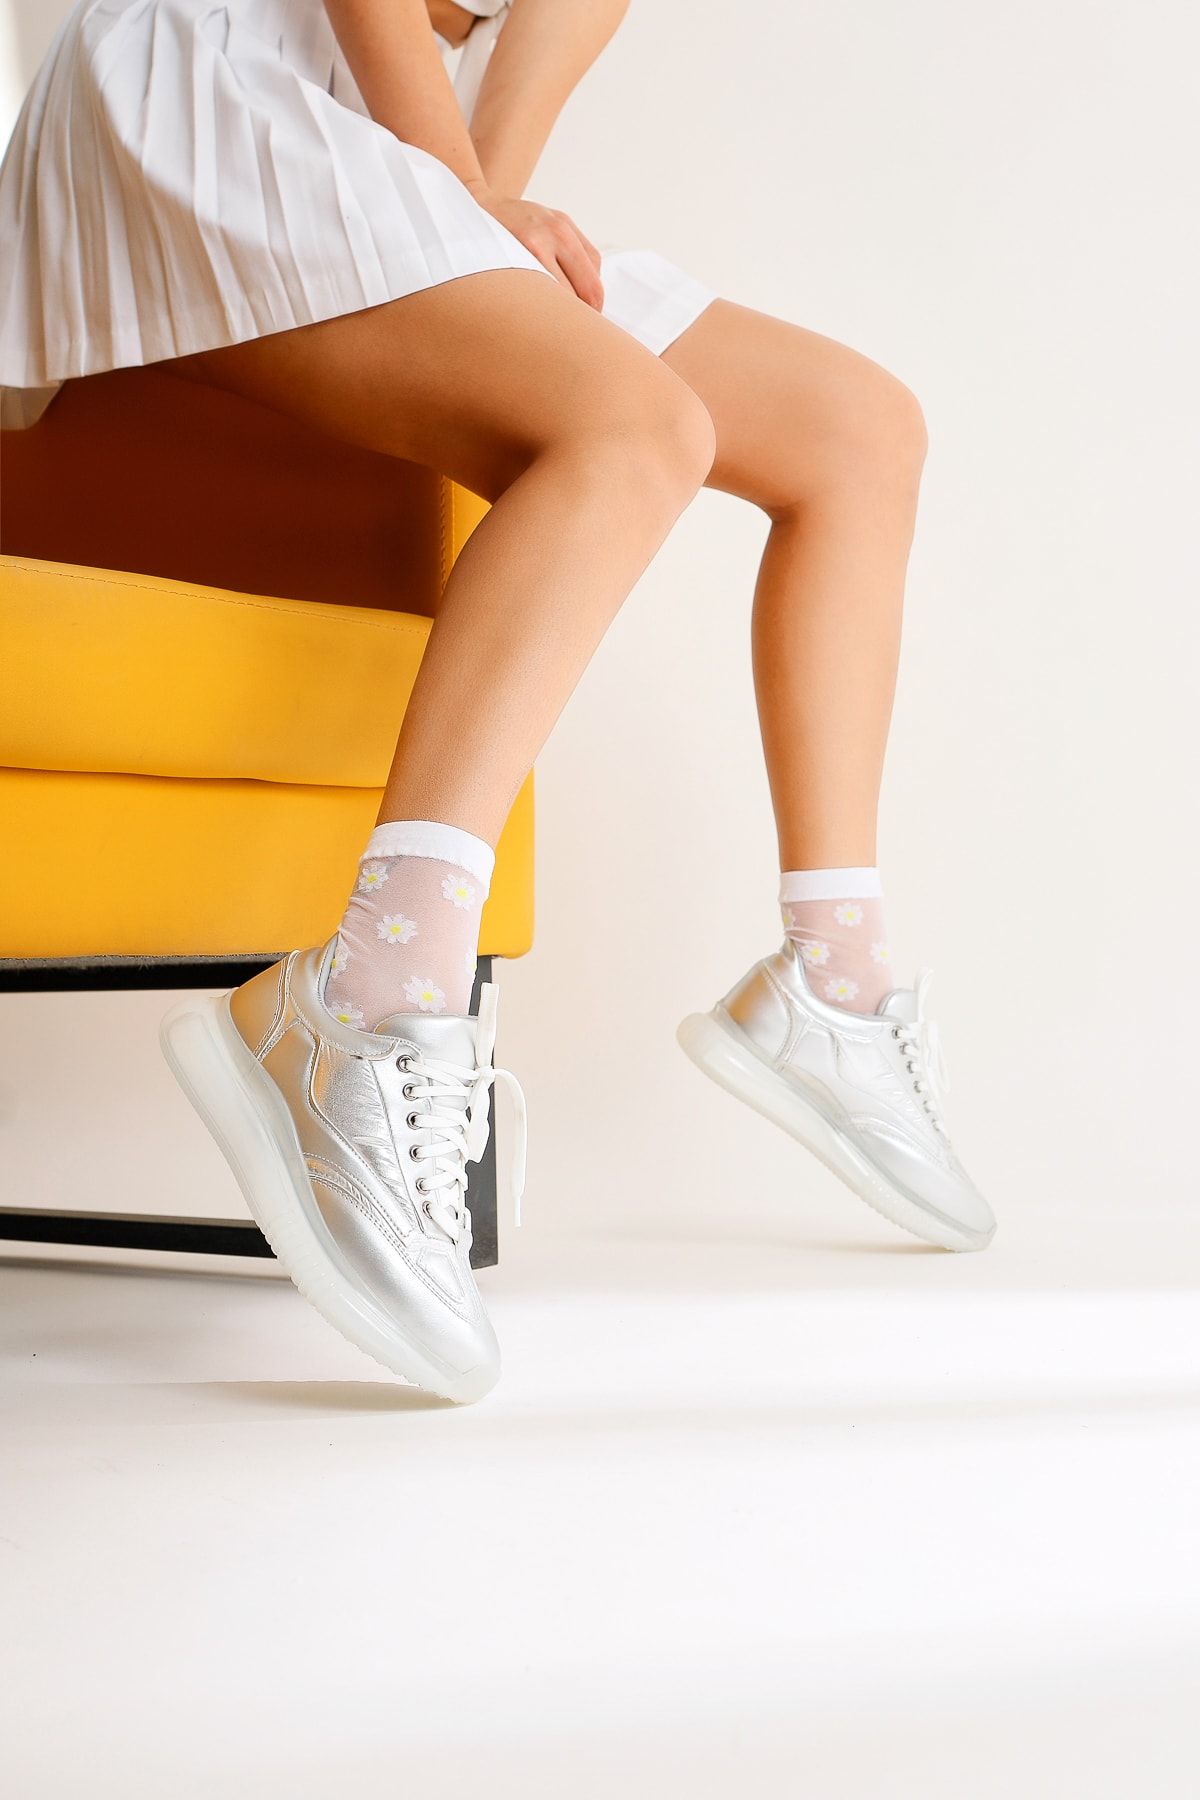 Limoya Nelda Gümüş Bağcıklı Sneakers Spor Ayakkabı